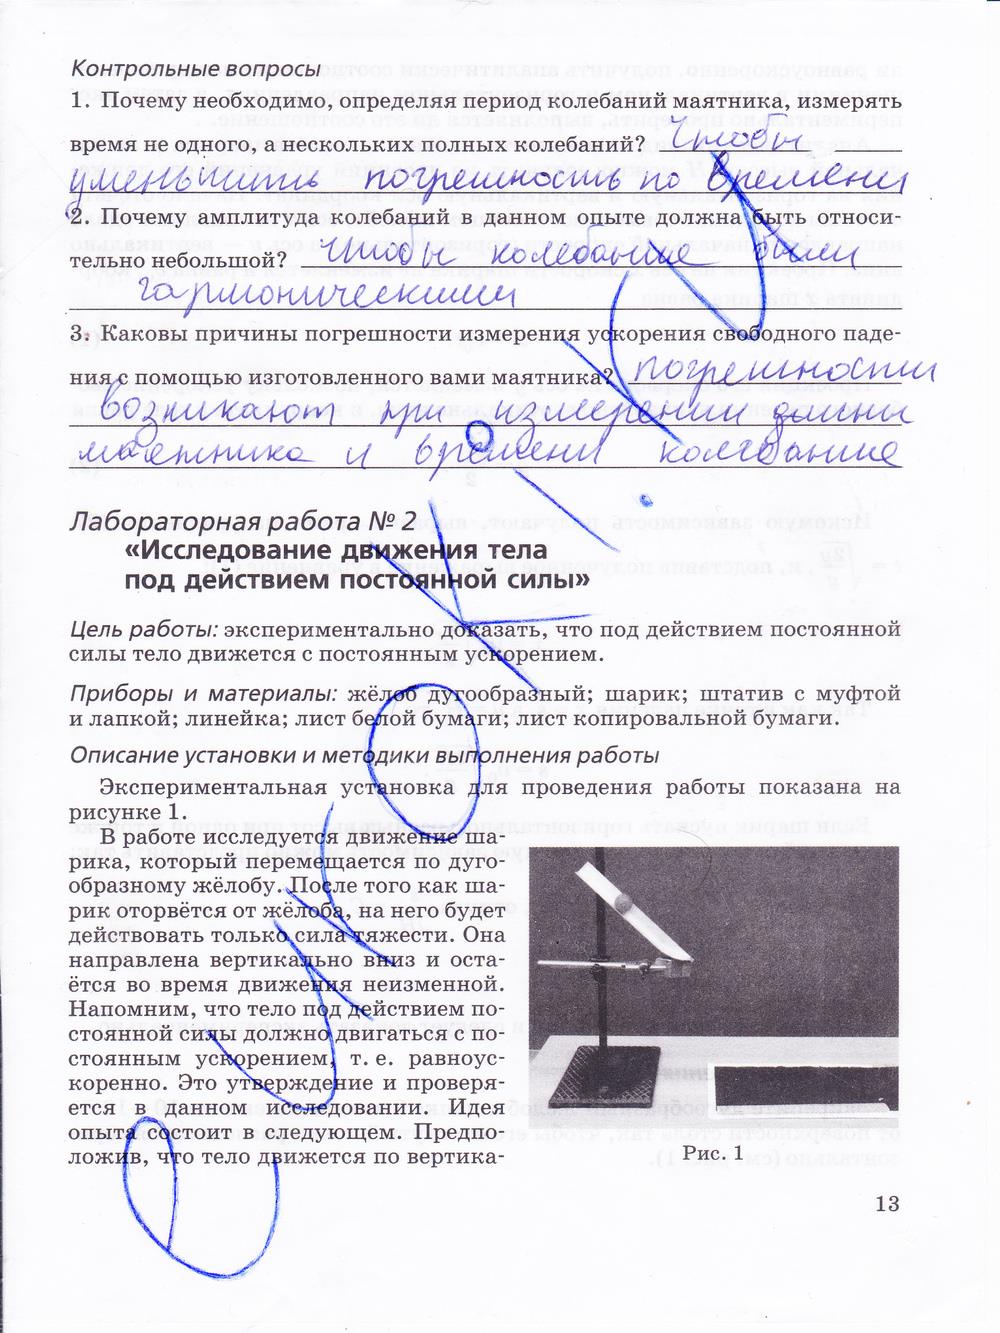 гдз 10 класс тетрадь для лабораторных работ страница 13 физика Пурышева, Степанов